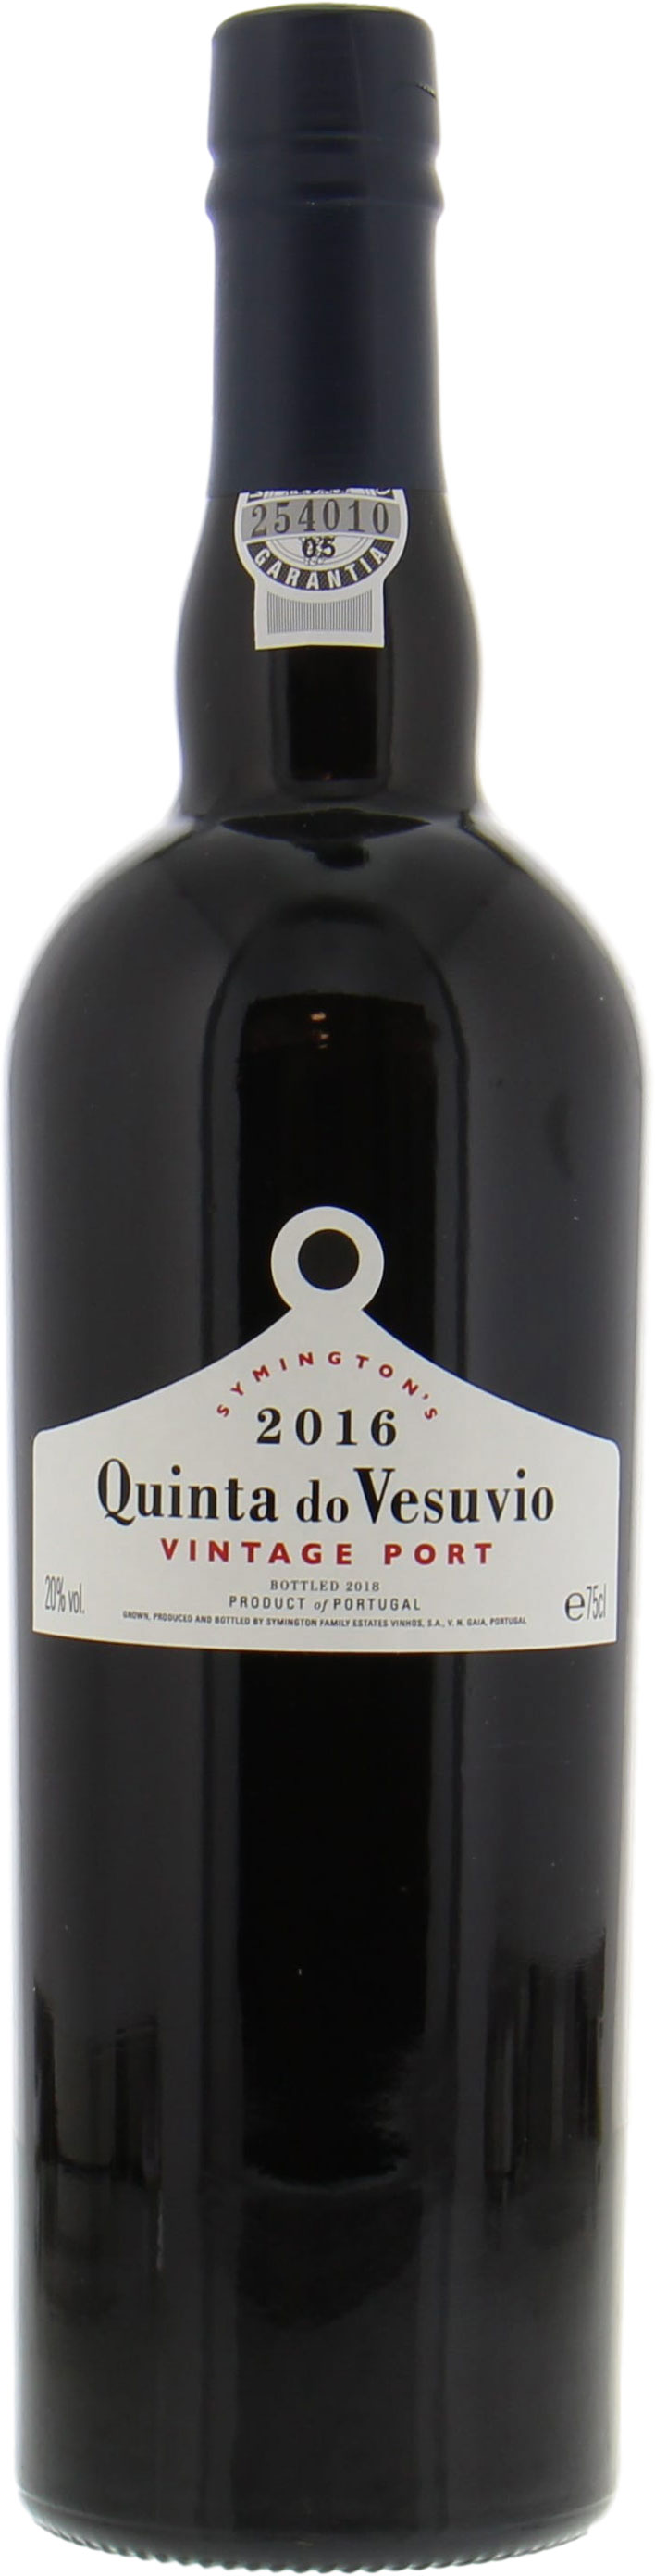 Quinta do Vesuvio - Vintage Port 2016 Perfect